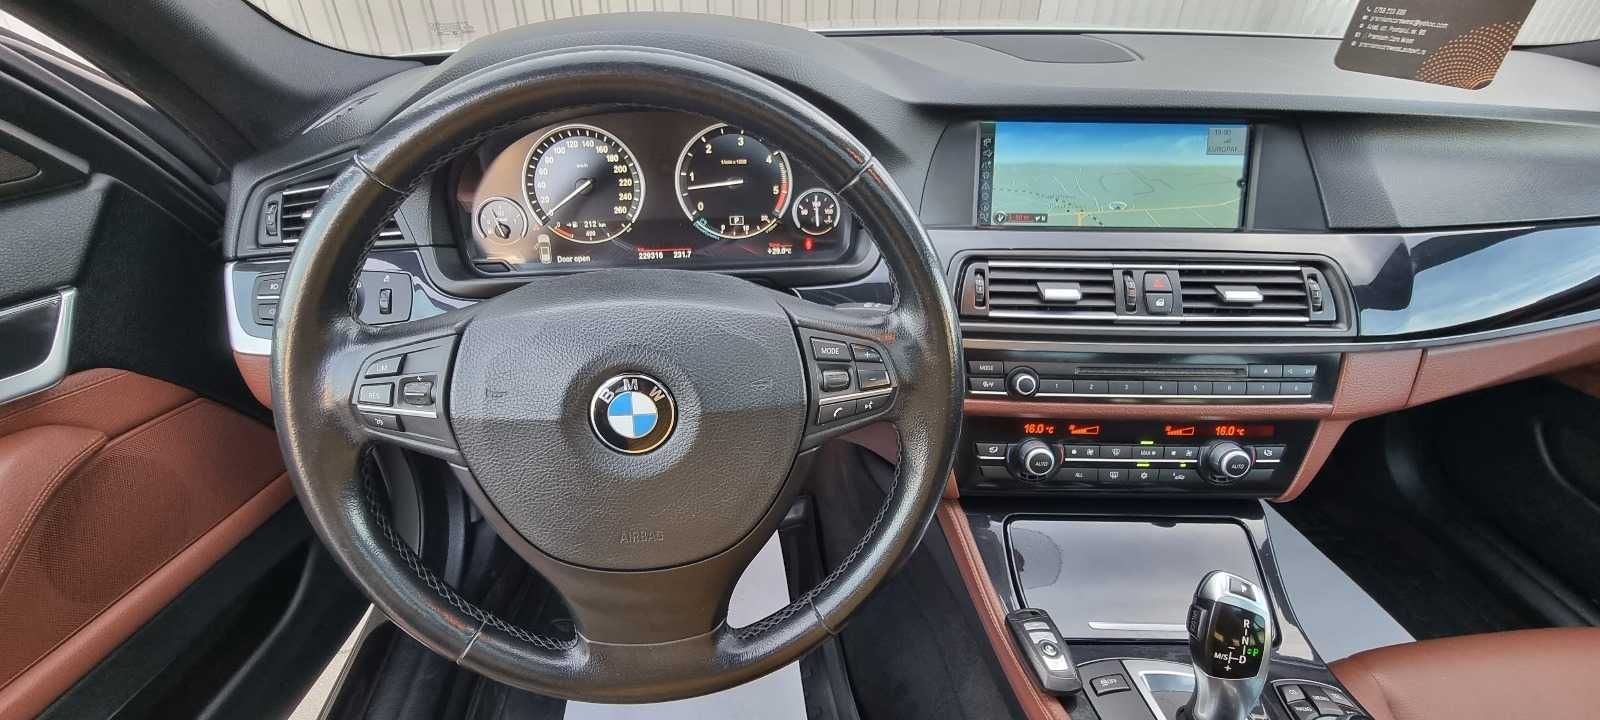 BMW 530d F11, 3.0 Diesel, 258 CP, Euro 5, An 2011